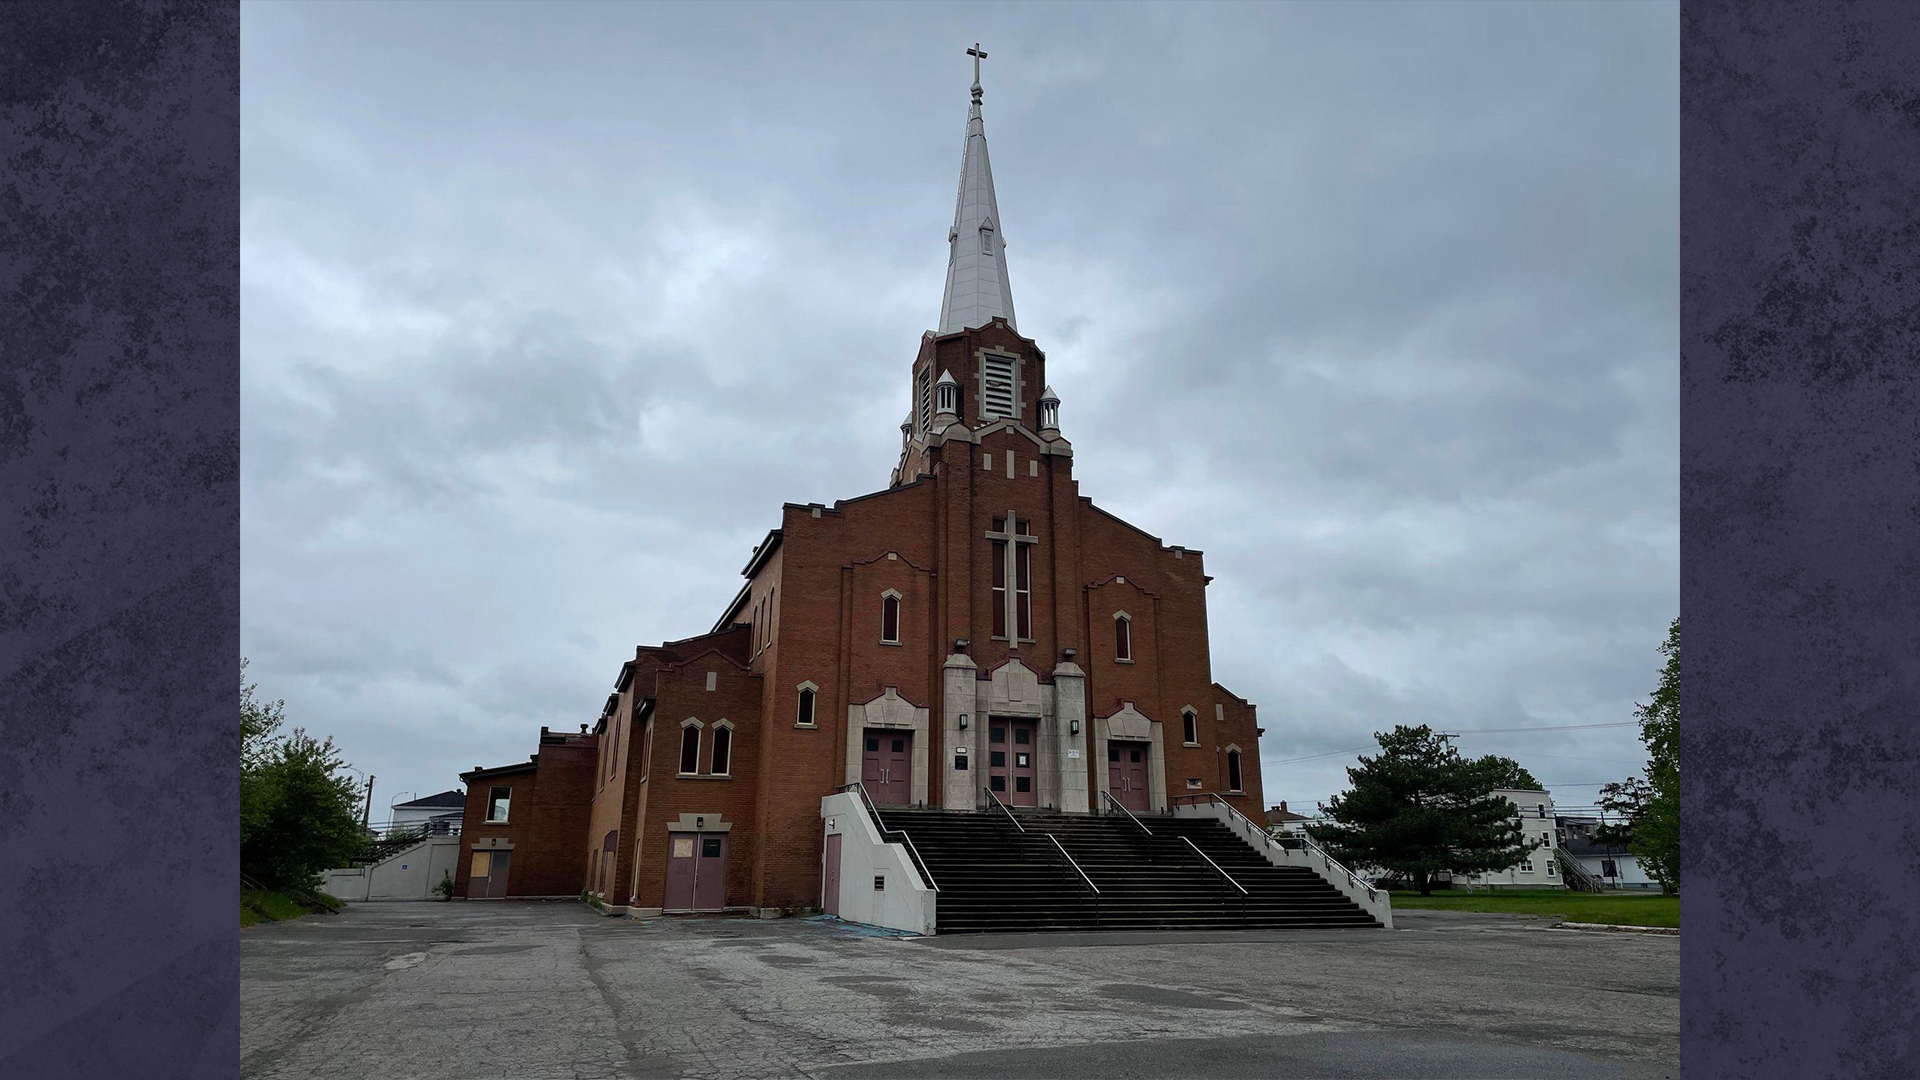 Le projet de développement immobilier sur le site de l'ancienne église Ste-Marguerite à Trois-Rivières est revu à la baisse.